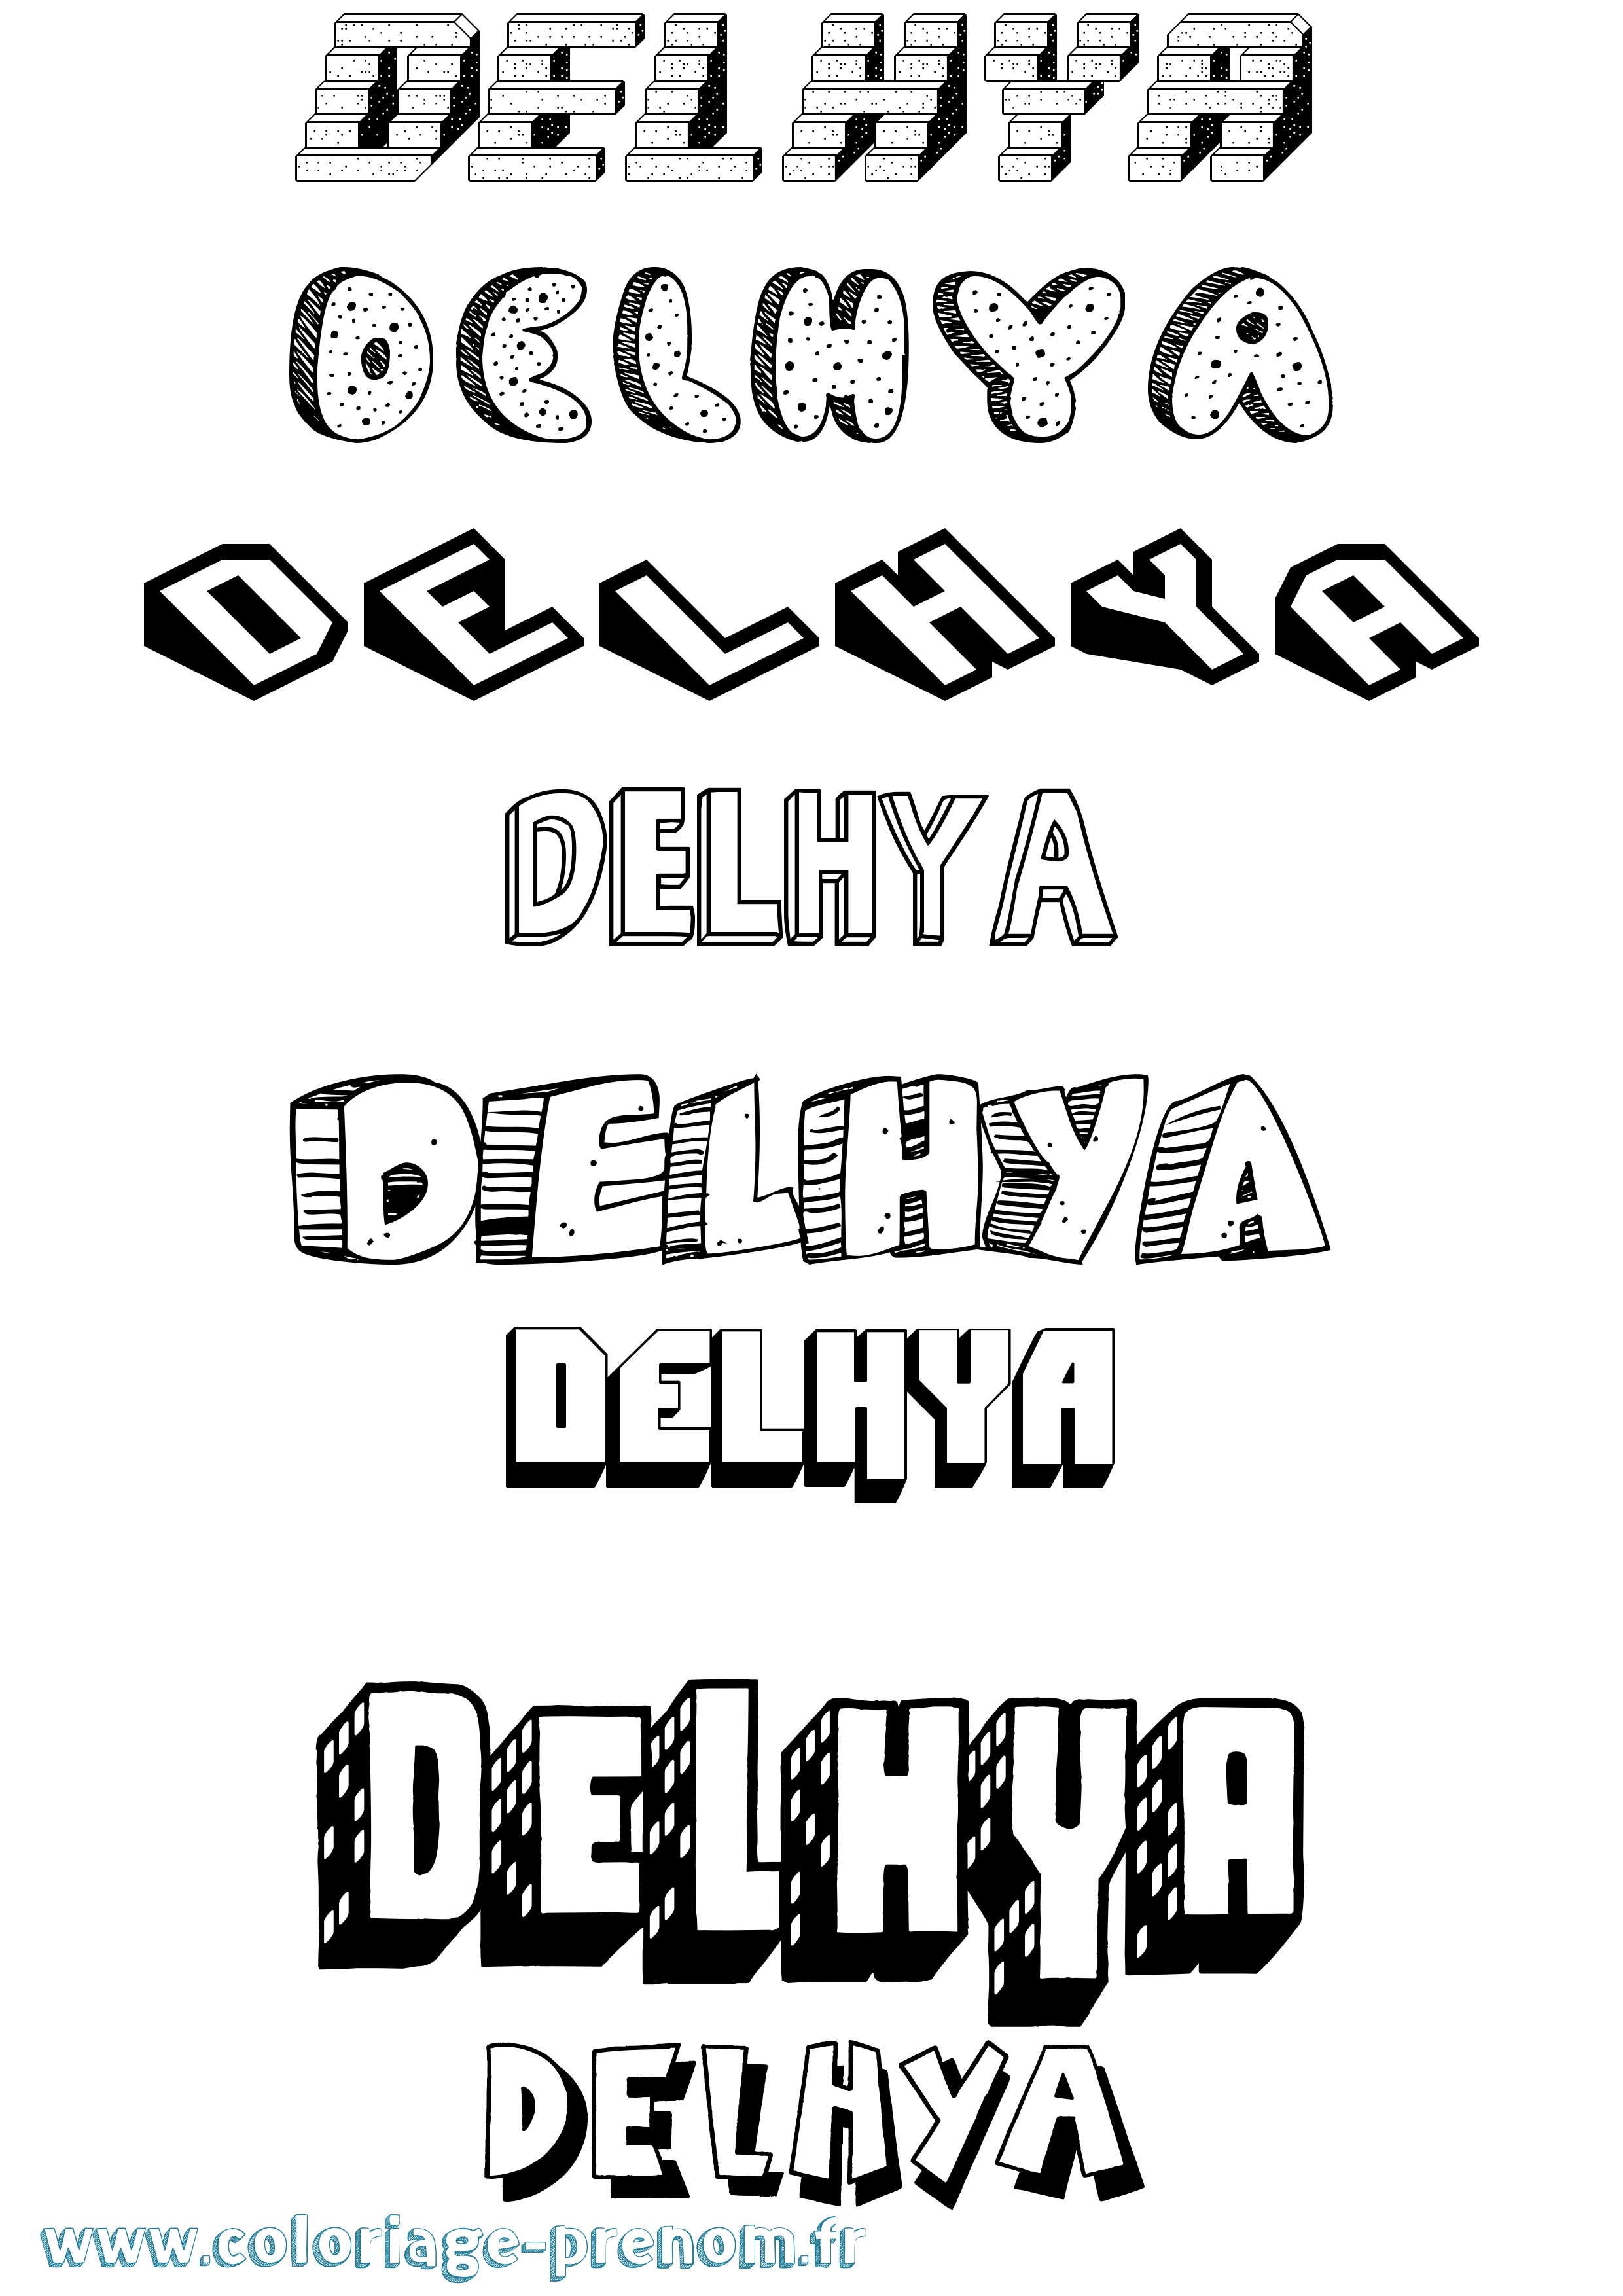 Coloriage prénom Delhya Effet 3D